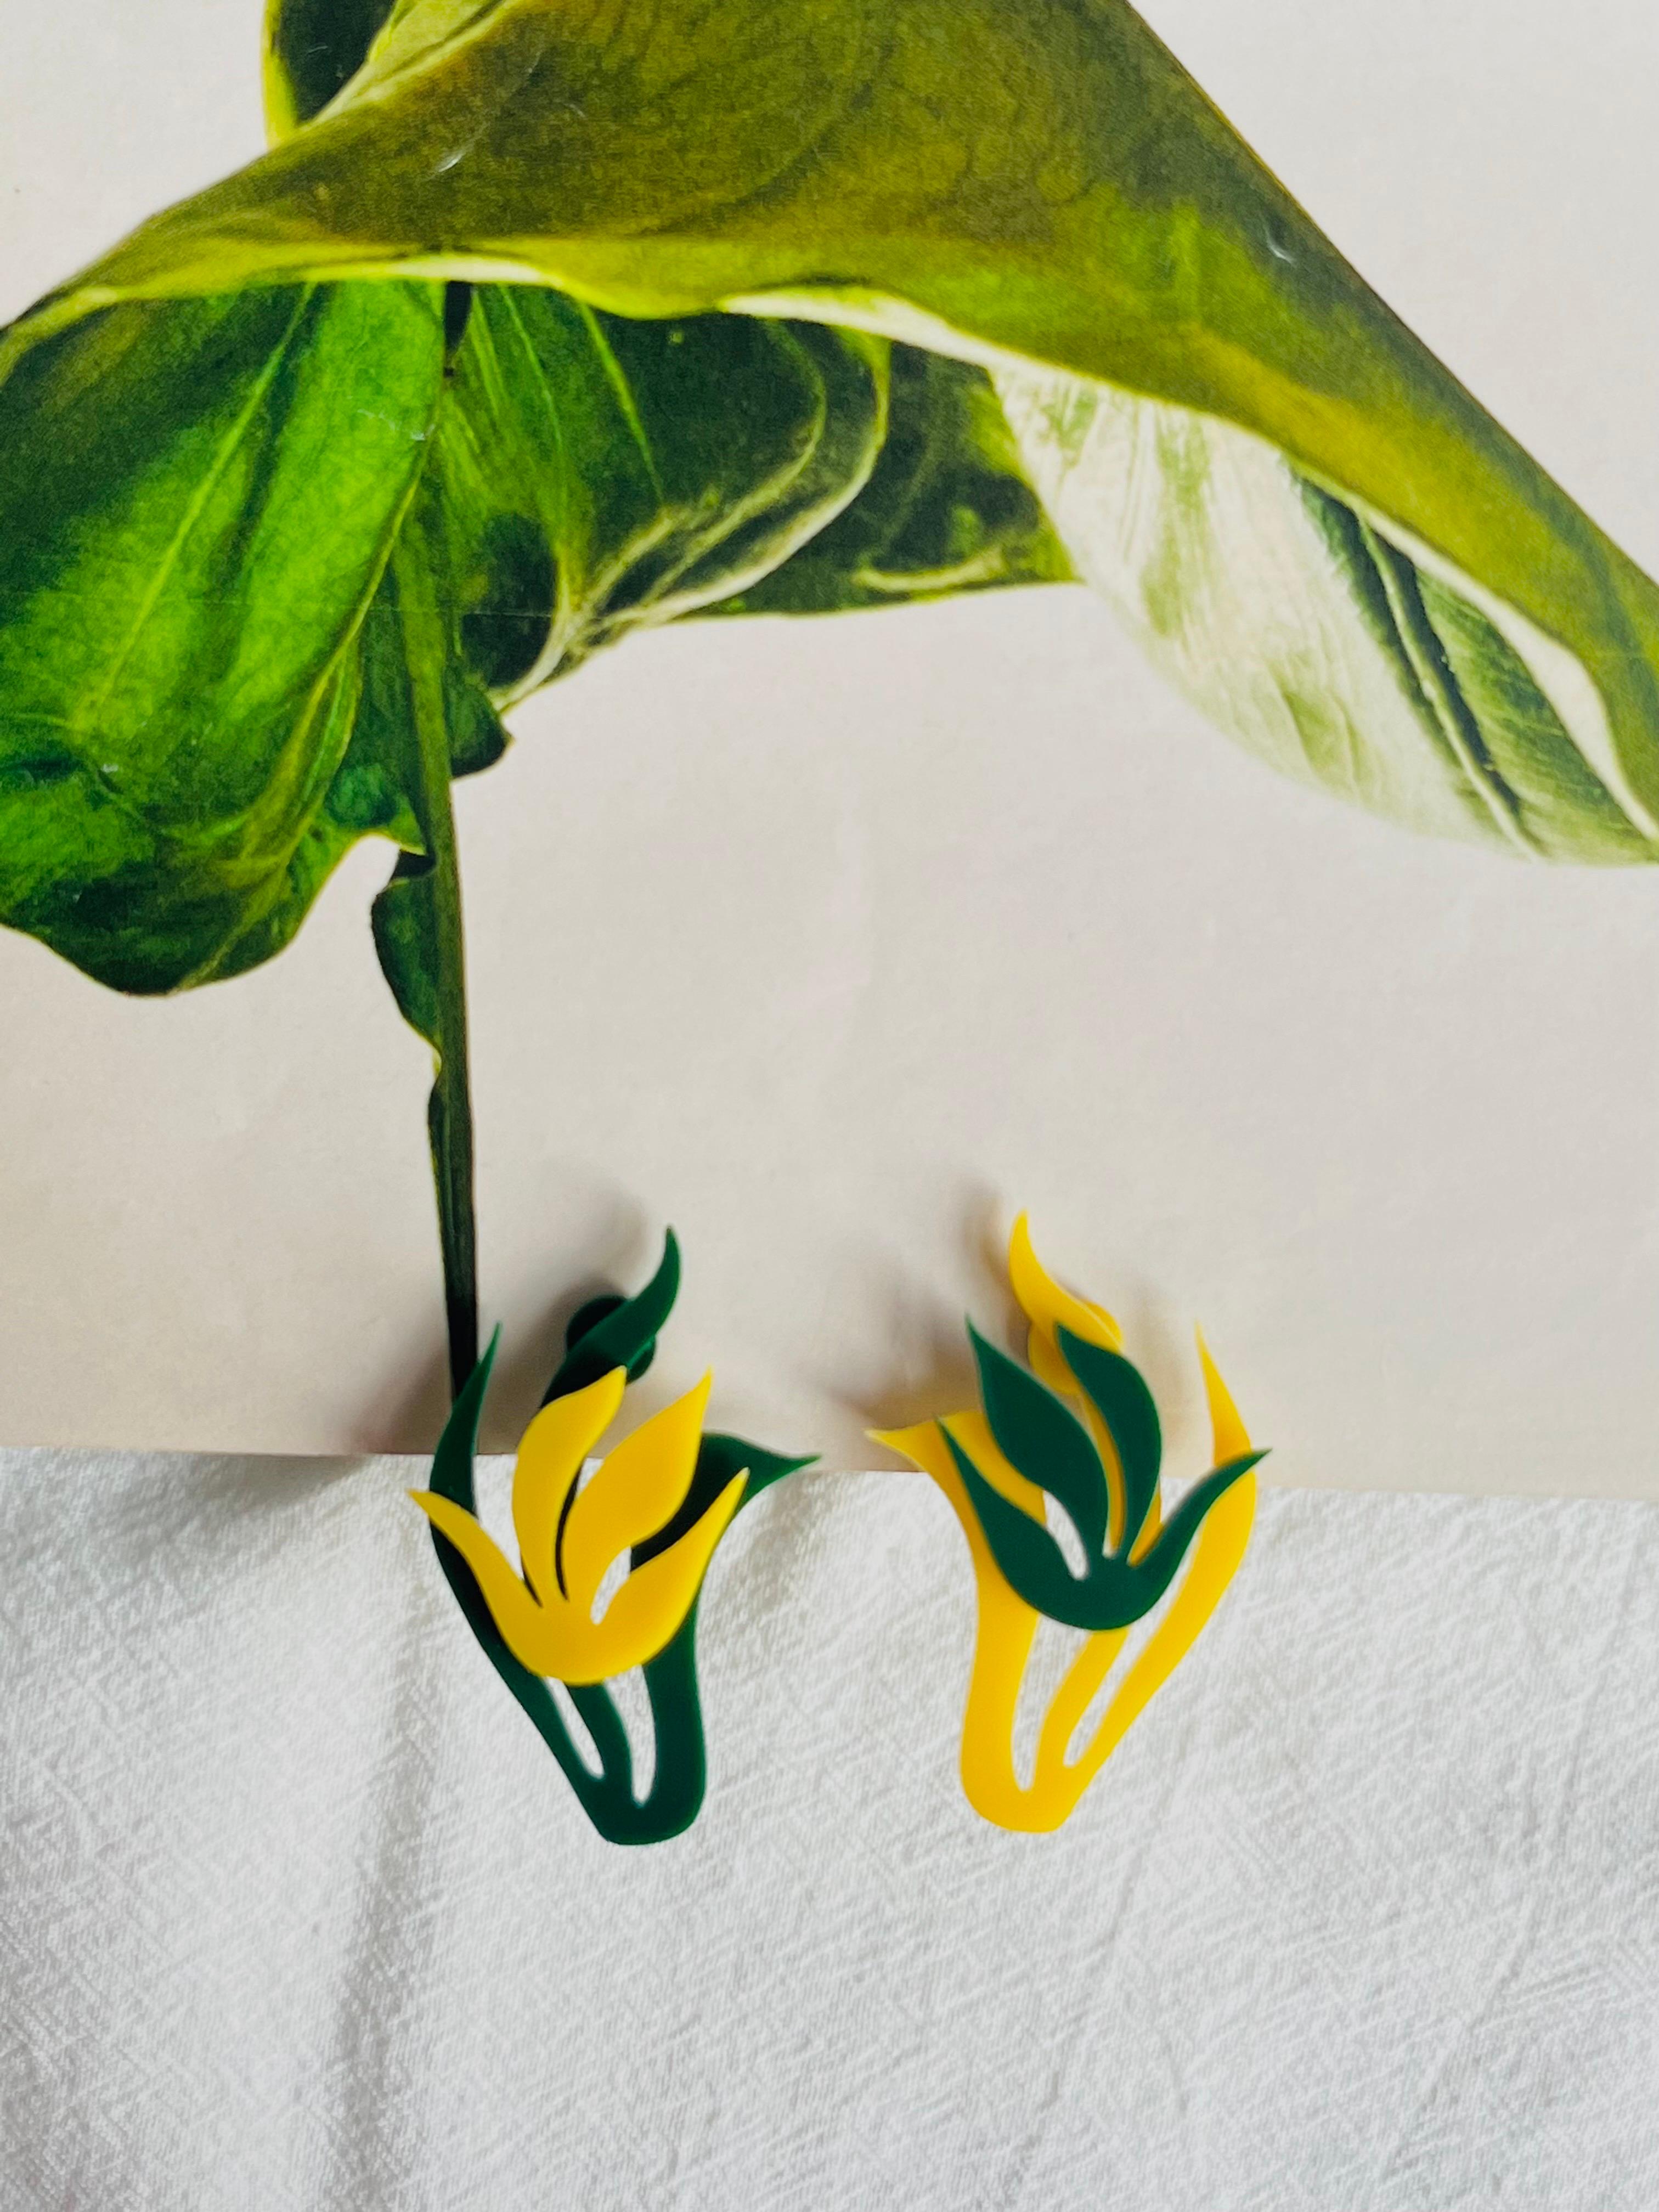 Asymmetrische gewellte gelb-grüne Tulpenblütenblätter Rustikale elegante Clip-Ohrringe, Swarovski Element

100% handgefertigt. Ausgezeichnetes Geschenk für die Dame. Sehr gute Qualität.

MATERIAL: Kunstharz, Legierung.

Größe: 4,4 * 3,0